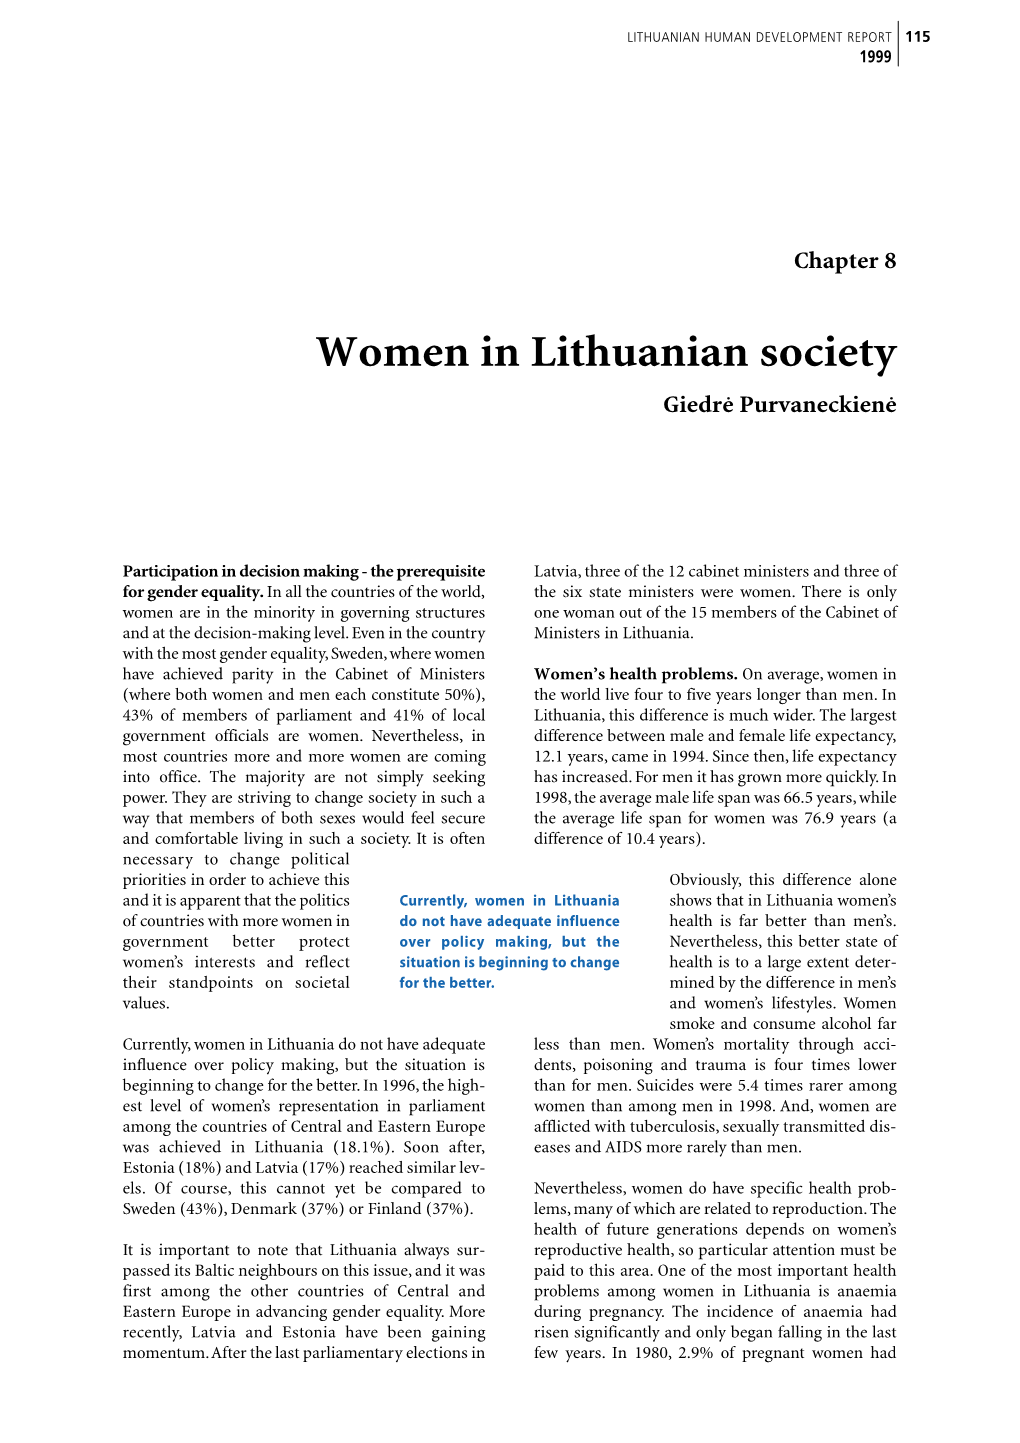 Women in Lithuanian Society Giedrò Purvaneckienò